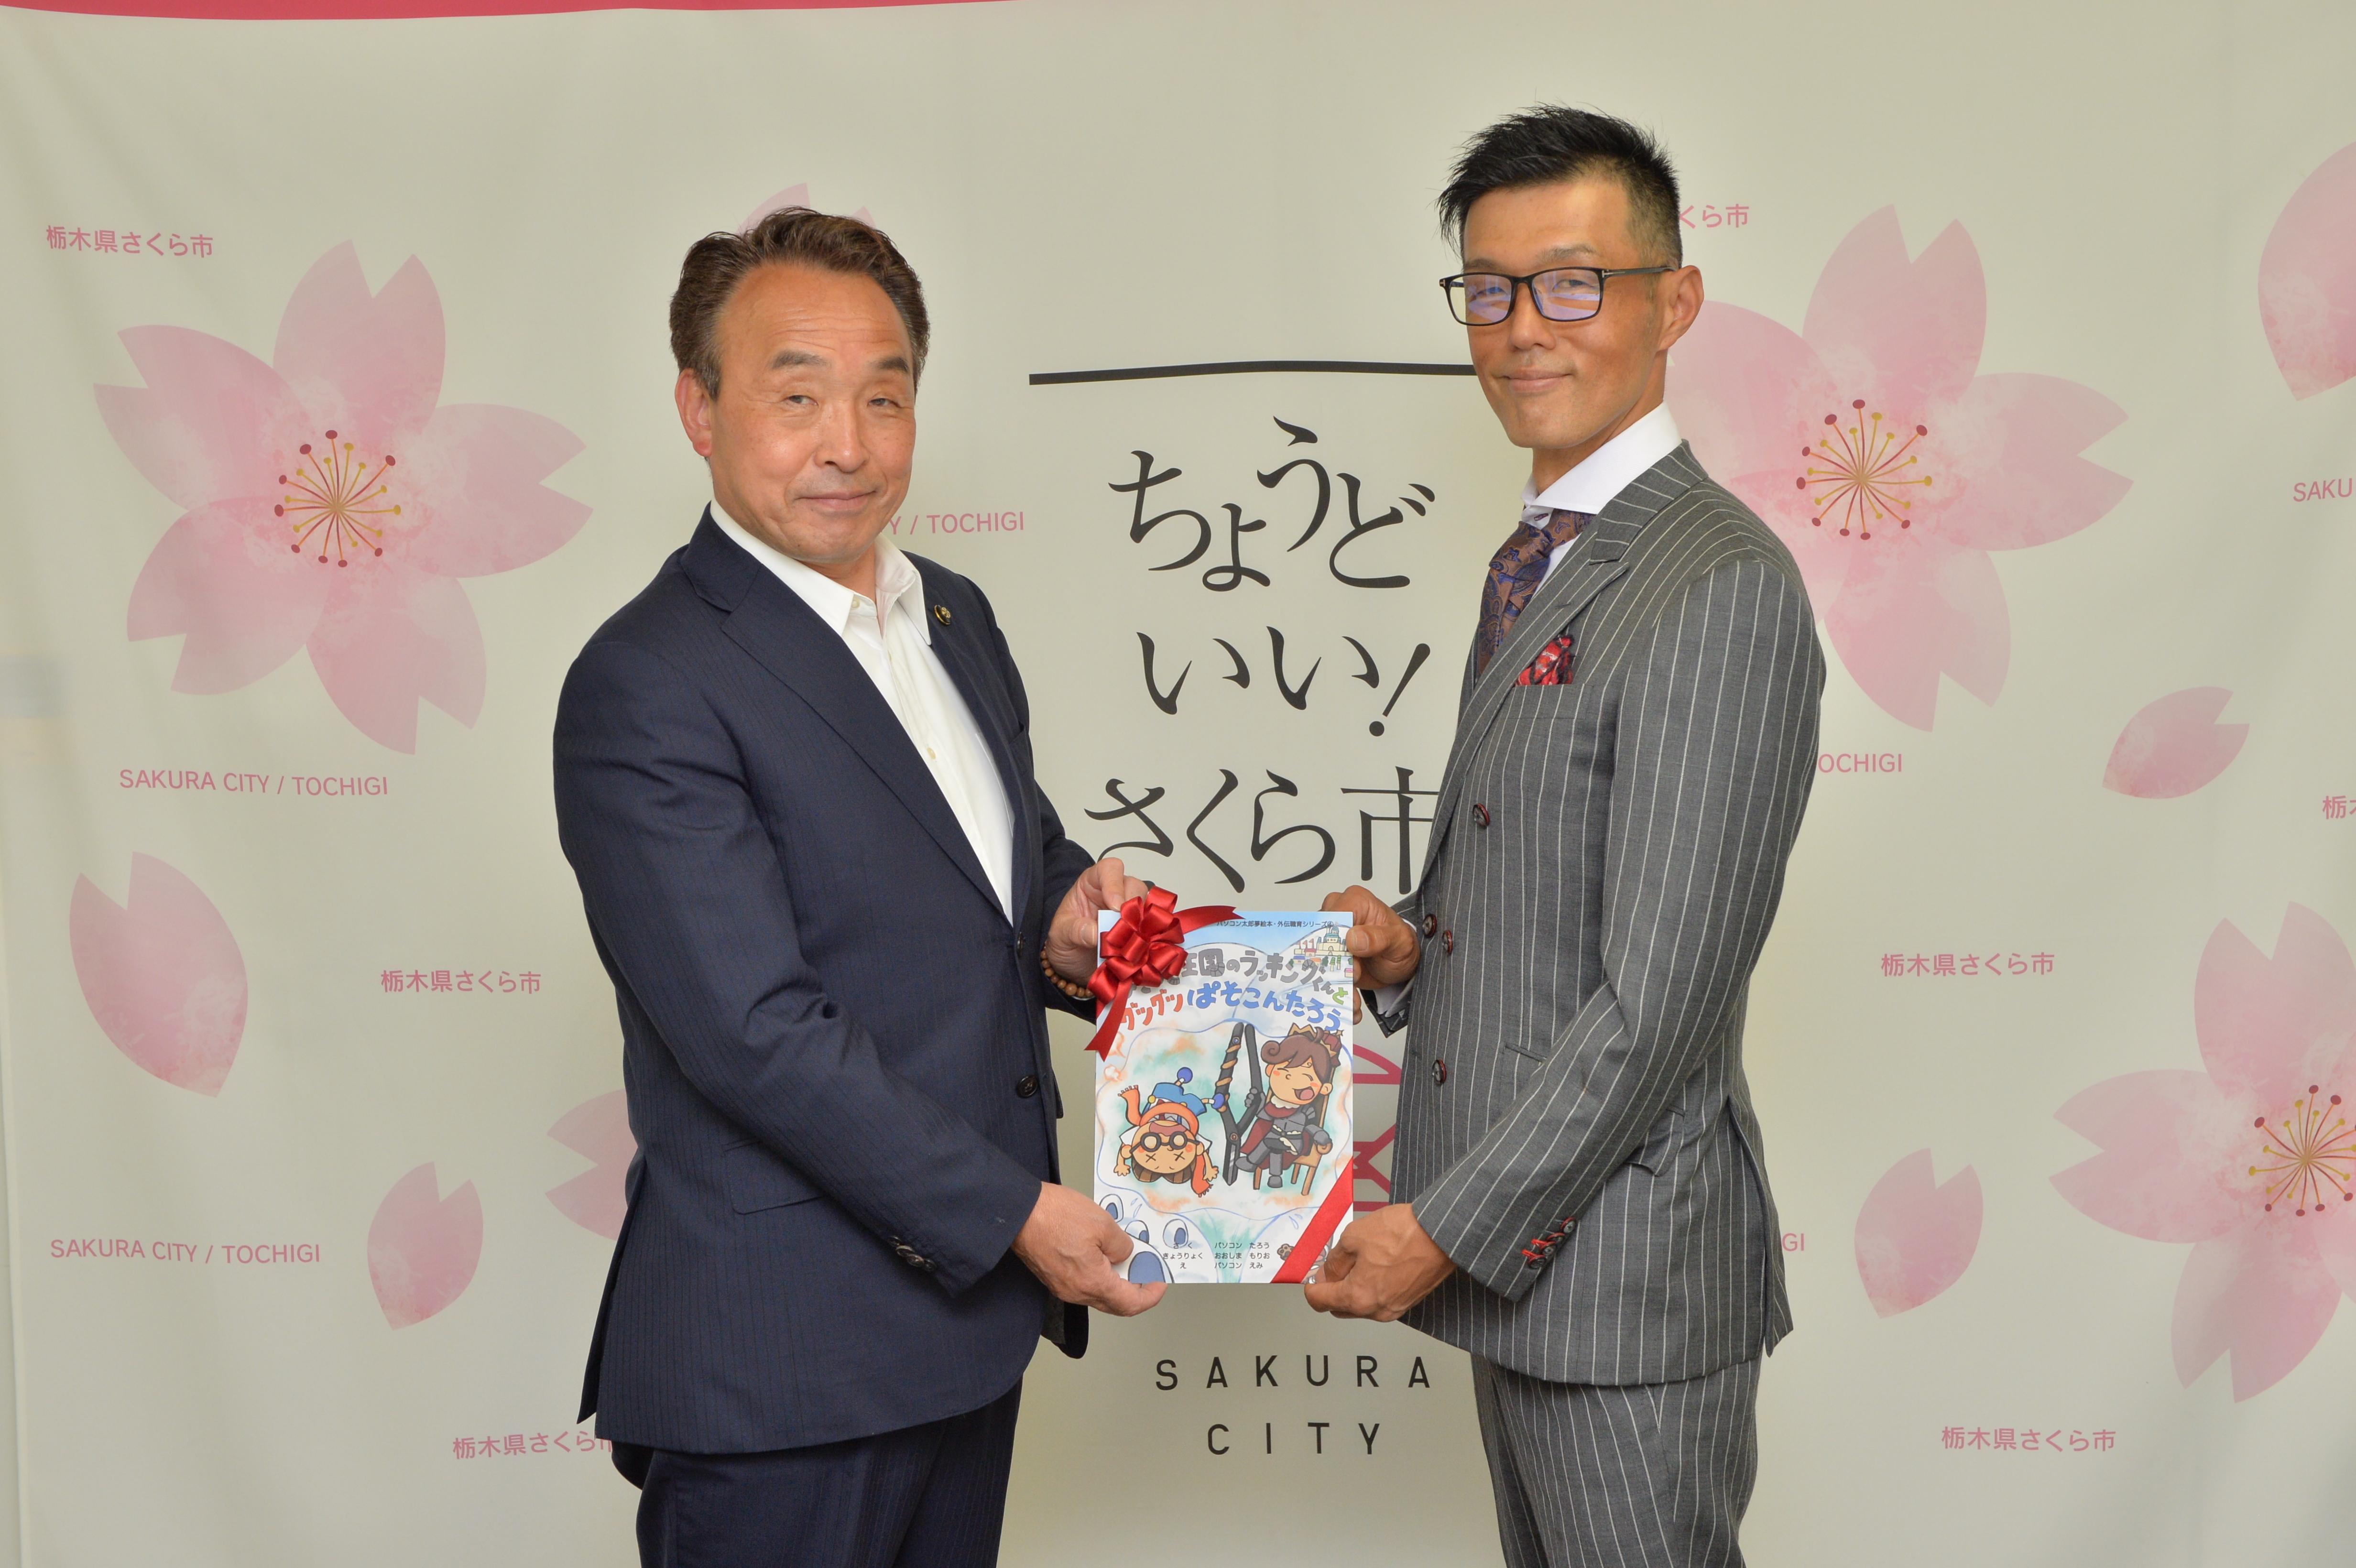 絵本の寄贈を受ける市長・議長・副市長と、（株）大島インシュレーションの代表の方の写真